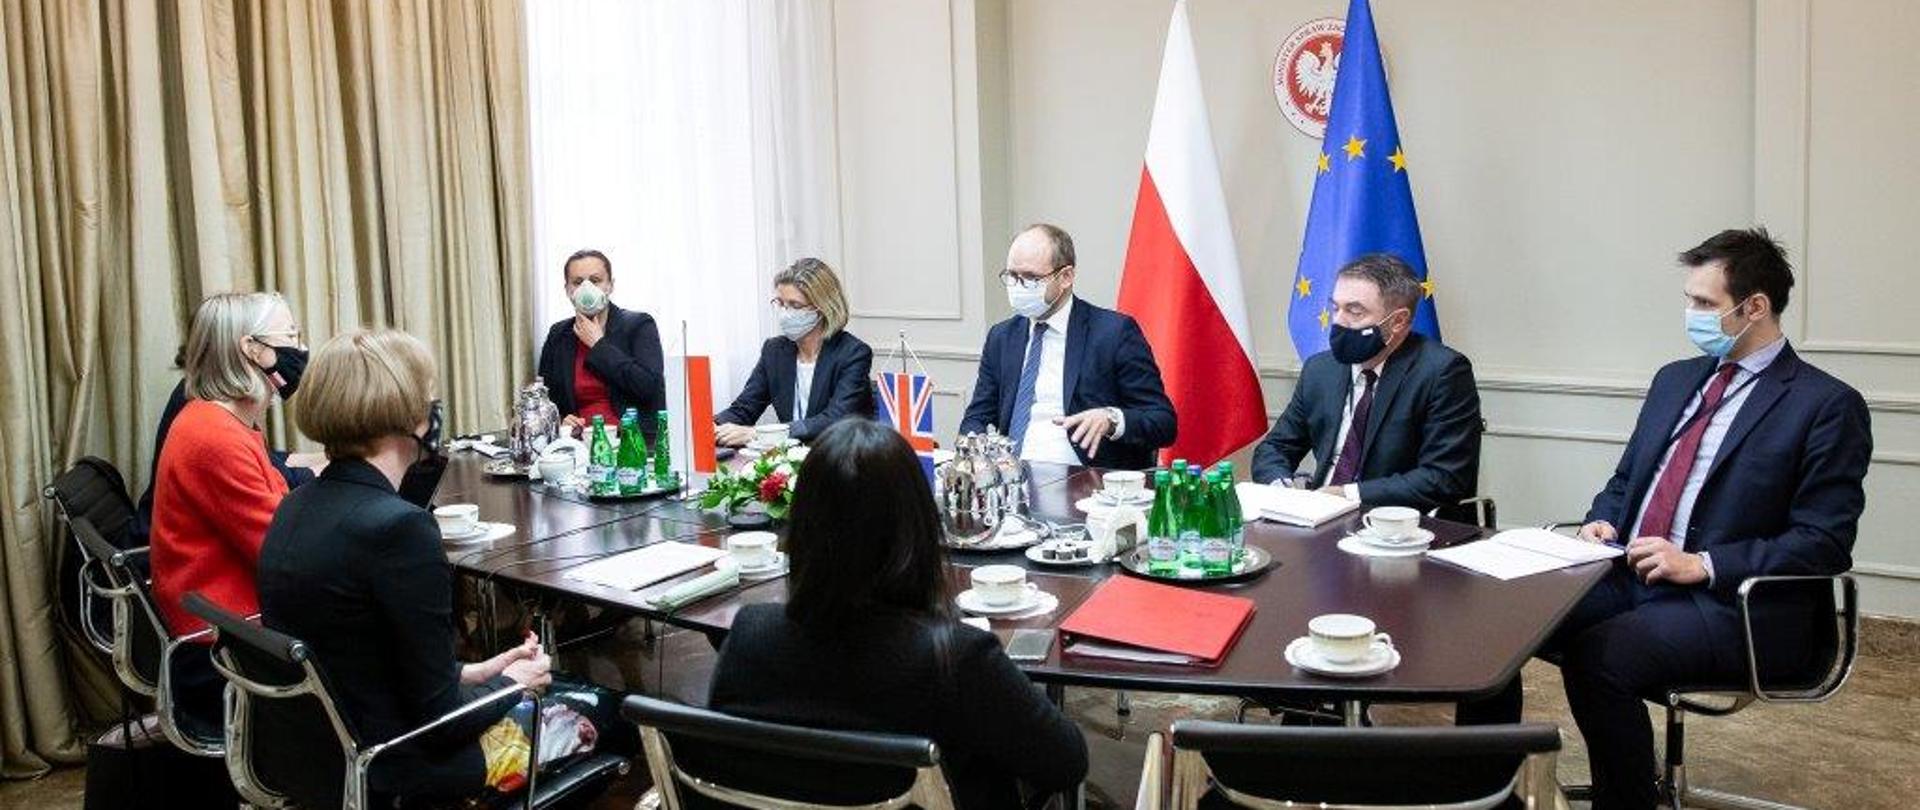 Problematyka wschodniego sąsiedztwa głównym tematem polsko-brytyjskich konsultacji politycznych.
